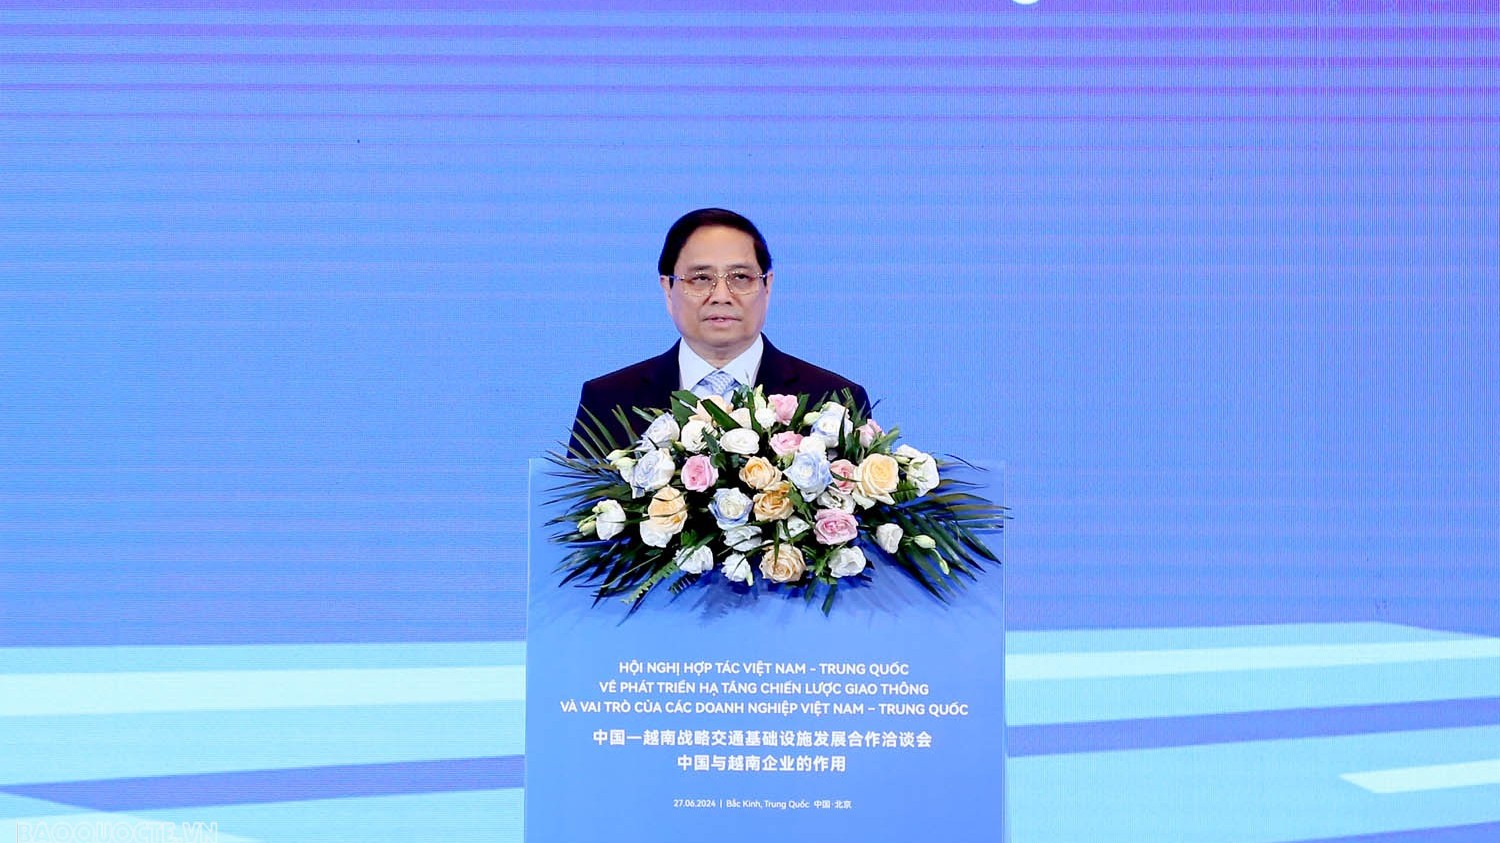 Hội nghị hợp tác Việt Nam-Trung Quốc về phát triển hạ tầng chiến lược giao thông và vai trò của doanh nghiệp